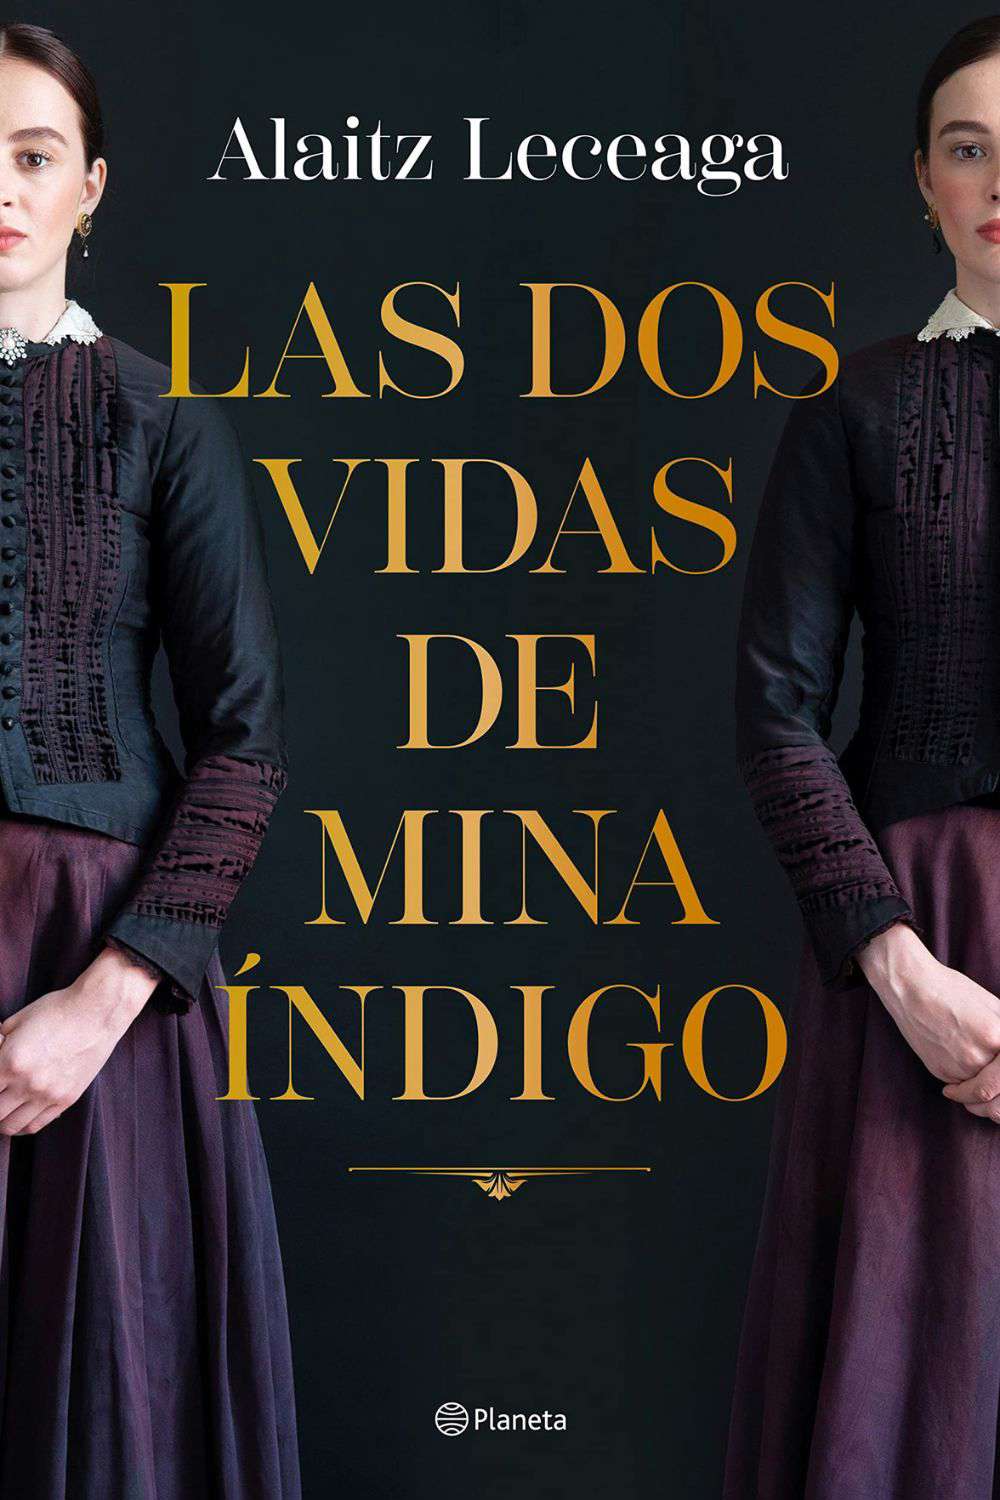 'Las dos vidas de Mina Índigo' de Altaitz Leceaga